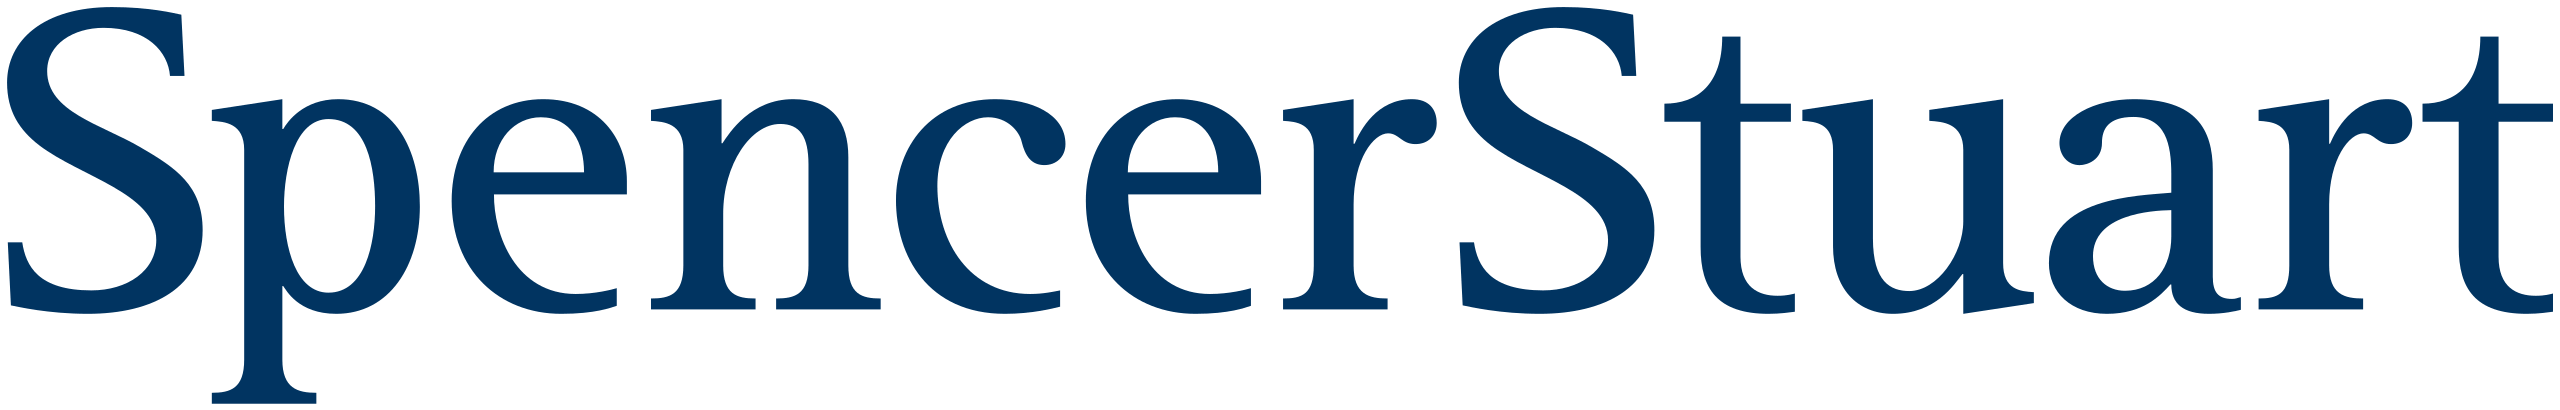 spencer stuart logo (2) (1)